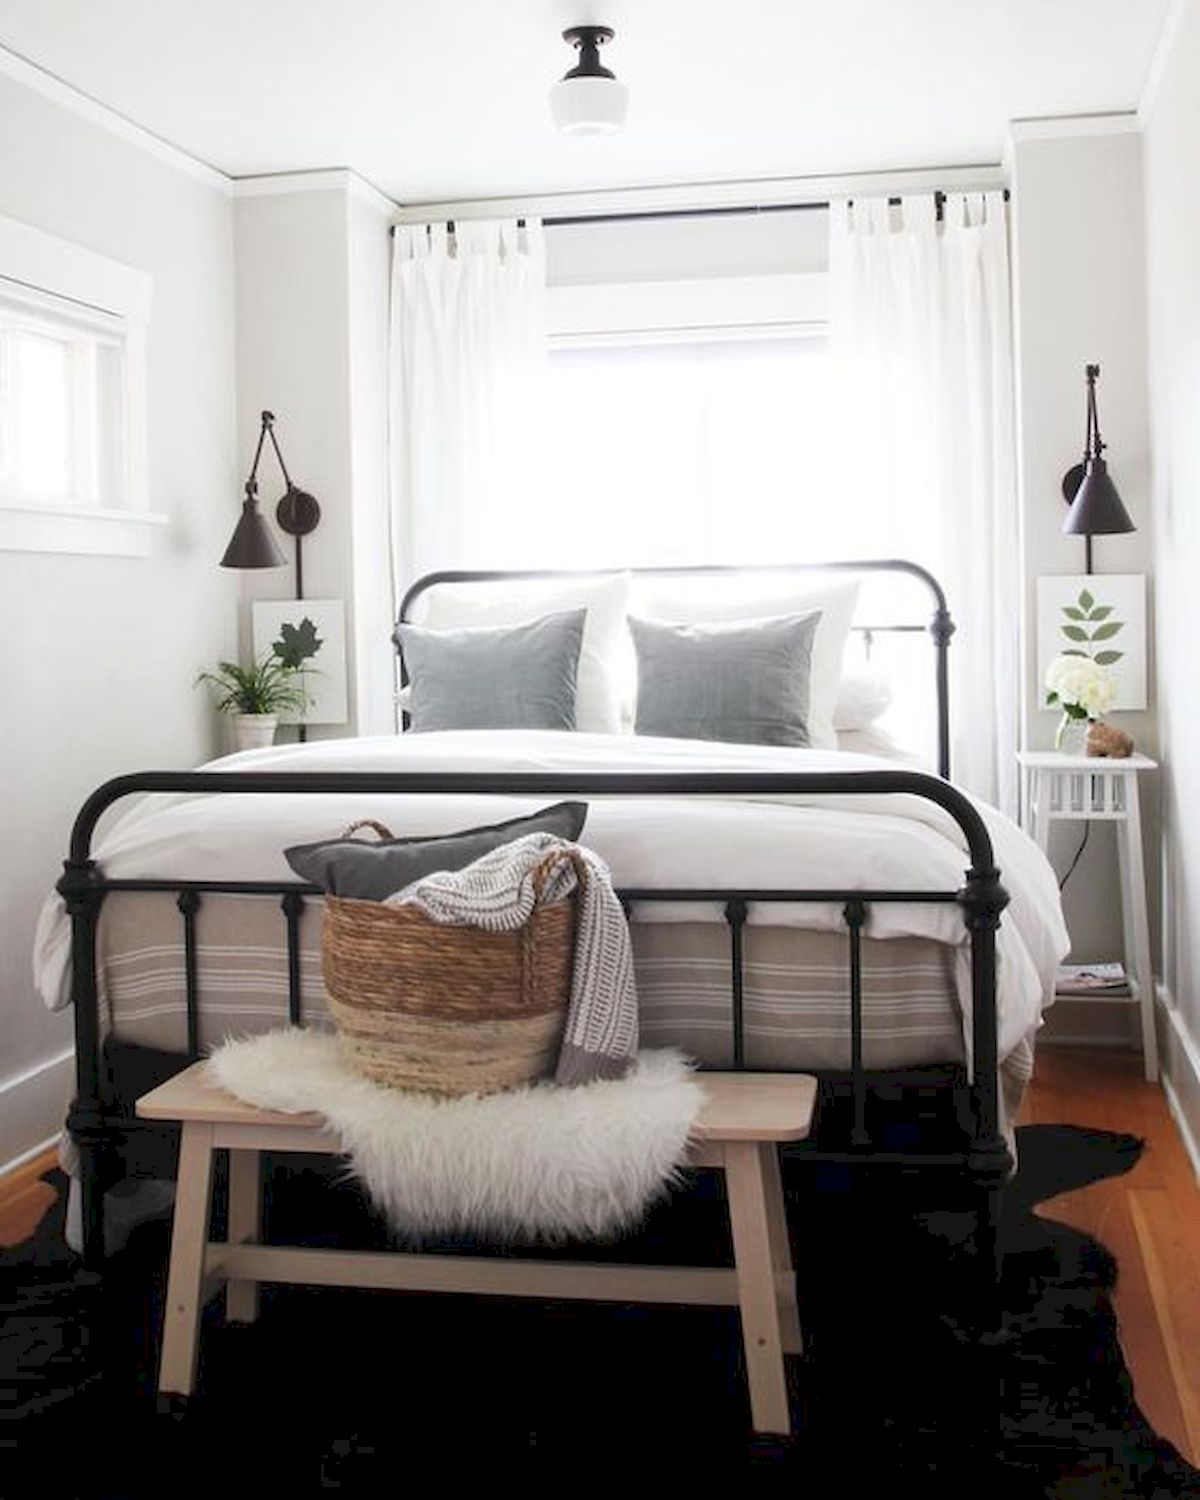 Những chiếc rèm mỏng màu trắng là lựa chọn hàng đầu cho những phòng ngủ nhỏ, bởi ánh sáng tự nhiên vẫn có thể len lỏi vào phòng, vừa mang lại vẻ đẹp tinh tế cho căn phòng